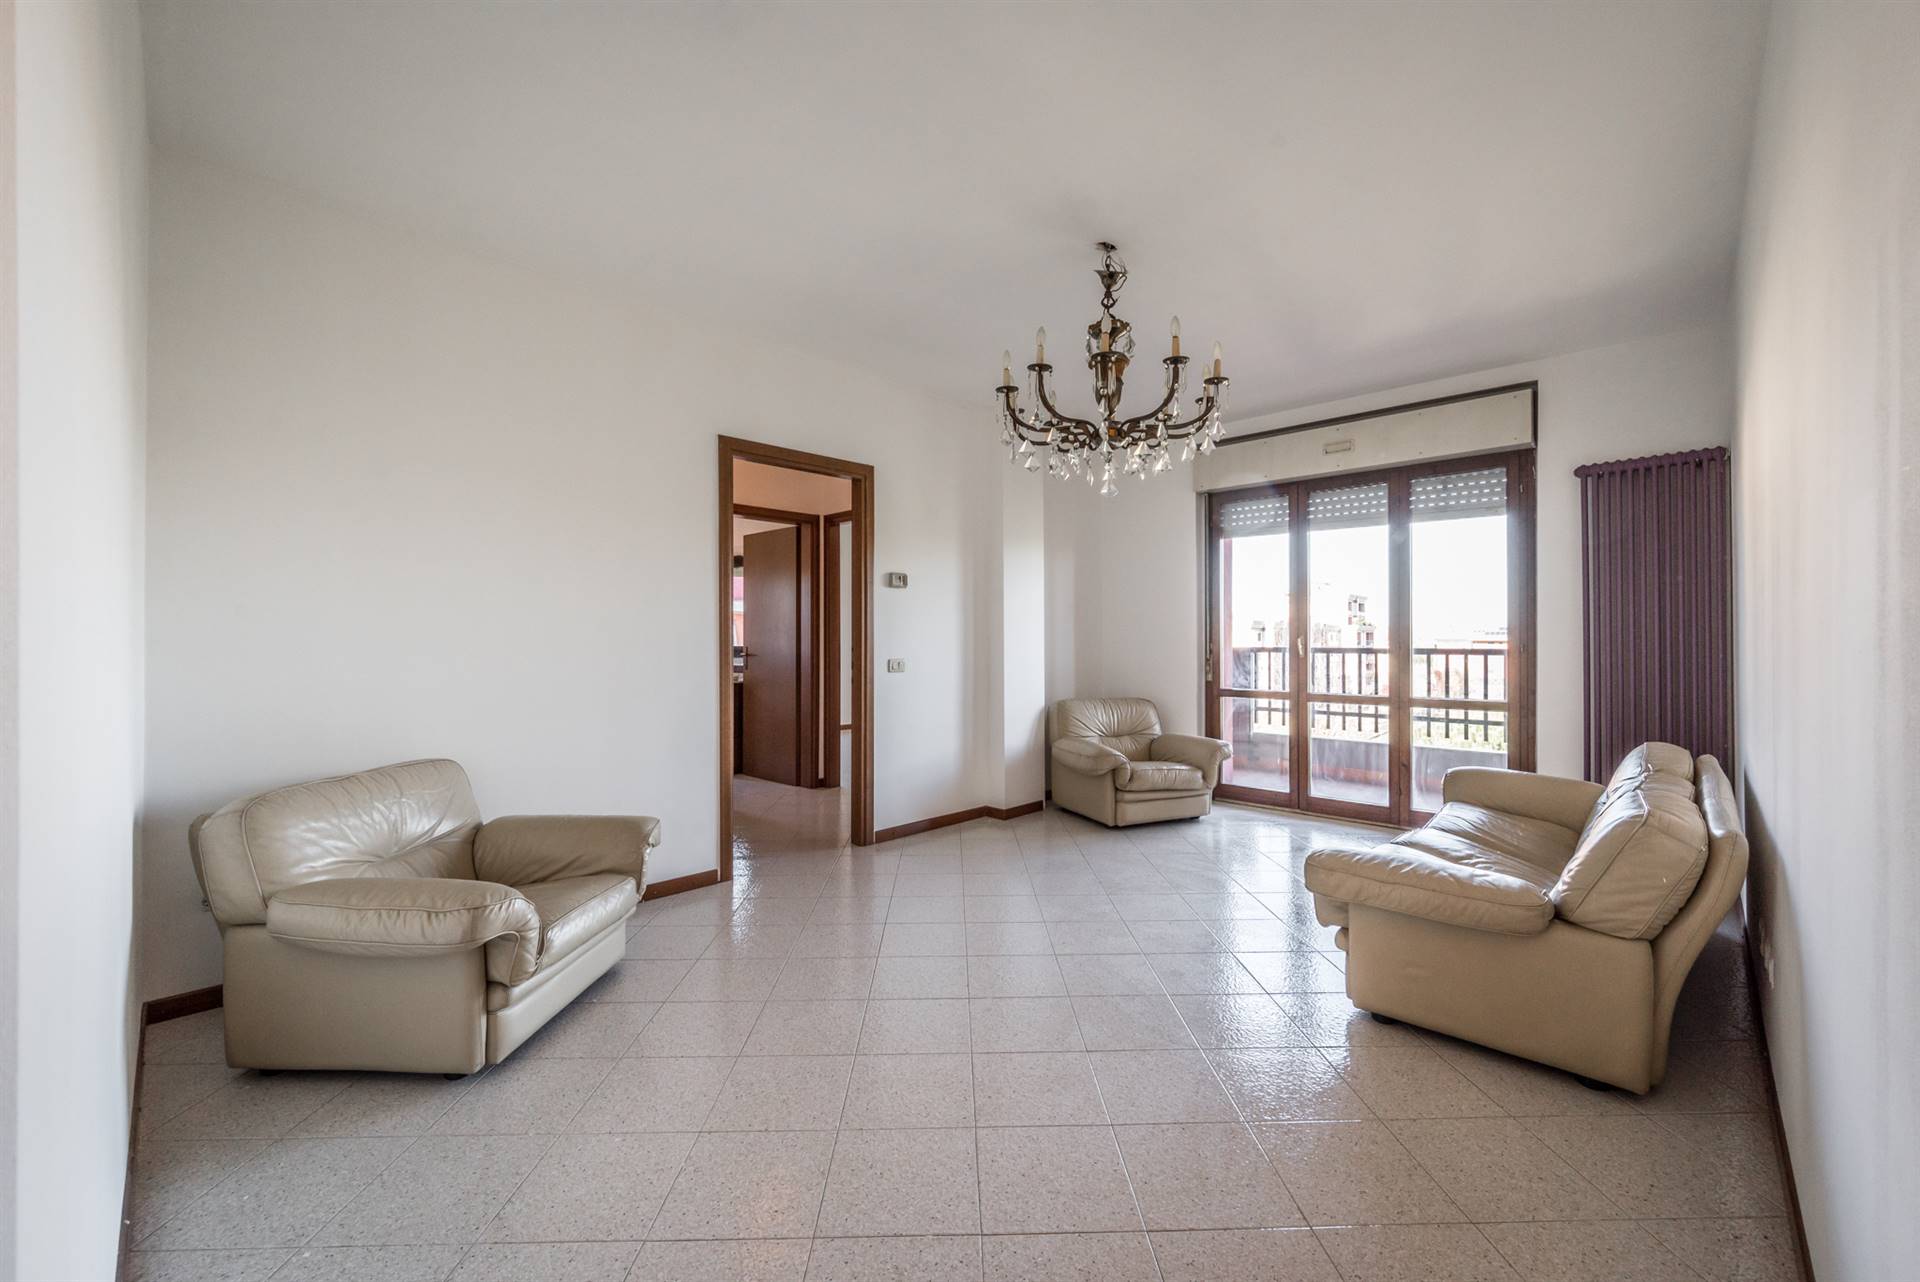 Appartamento in vendita a Rho, 3 locali, prezzo € 215.000 | CambioCasa.it